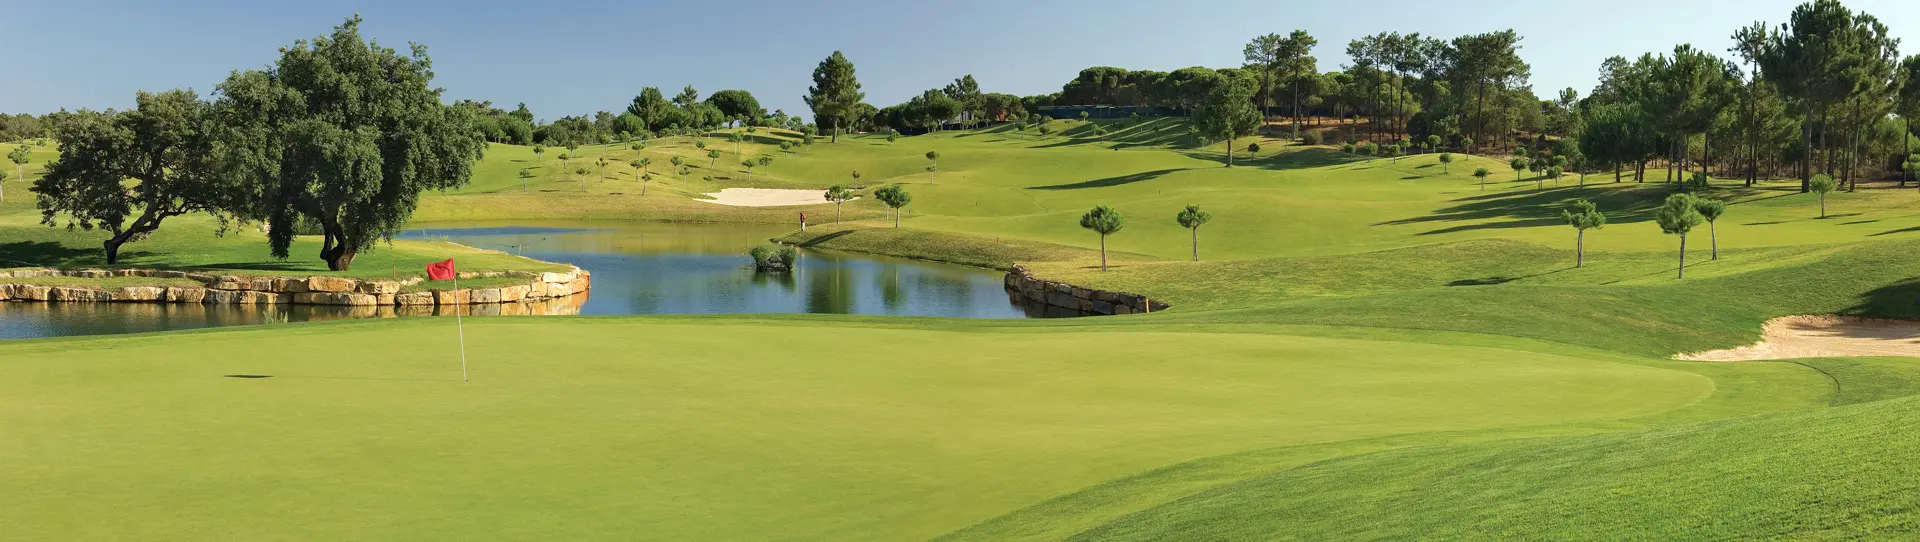 Portugal golf holidays - Pinheiros Altos 3 Rounds Pack - Photo 1